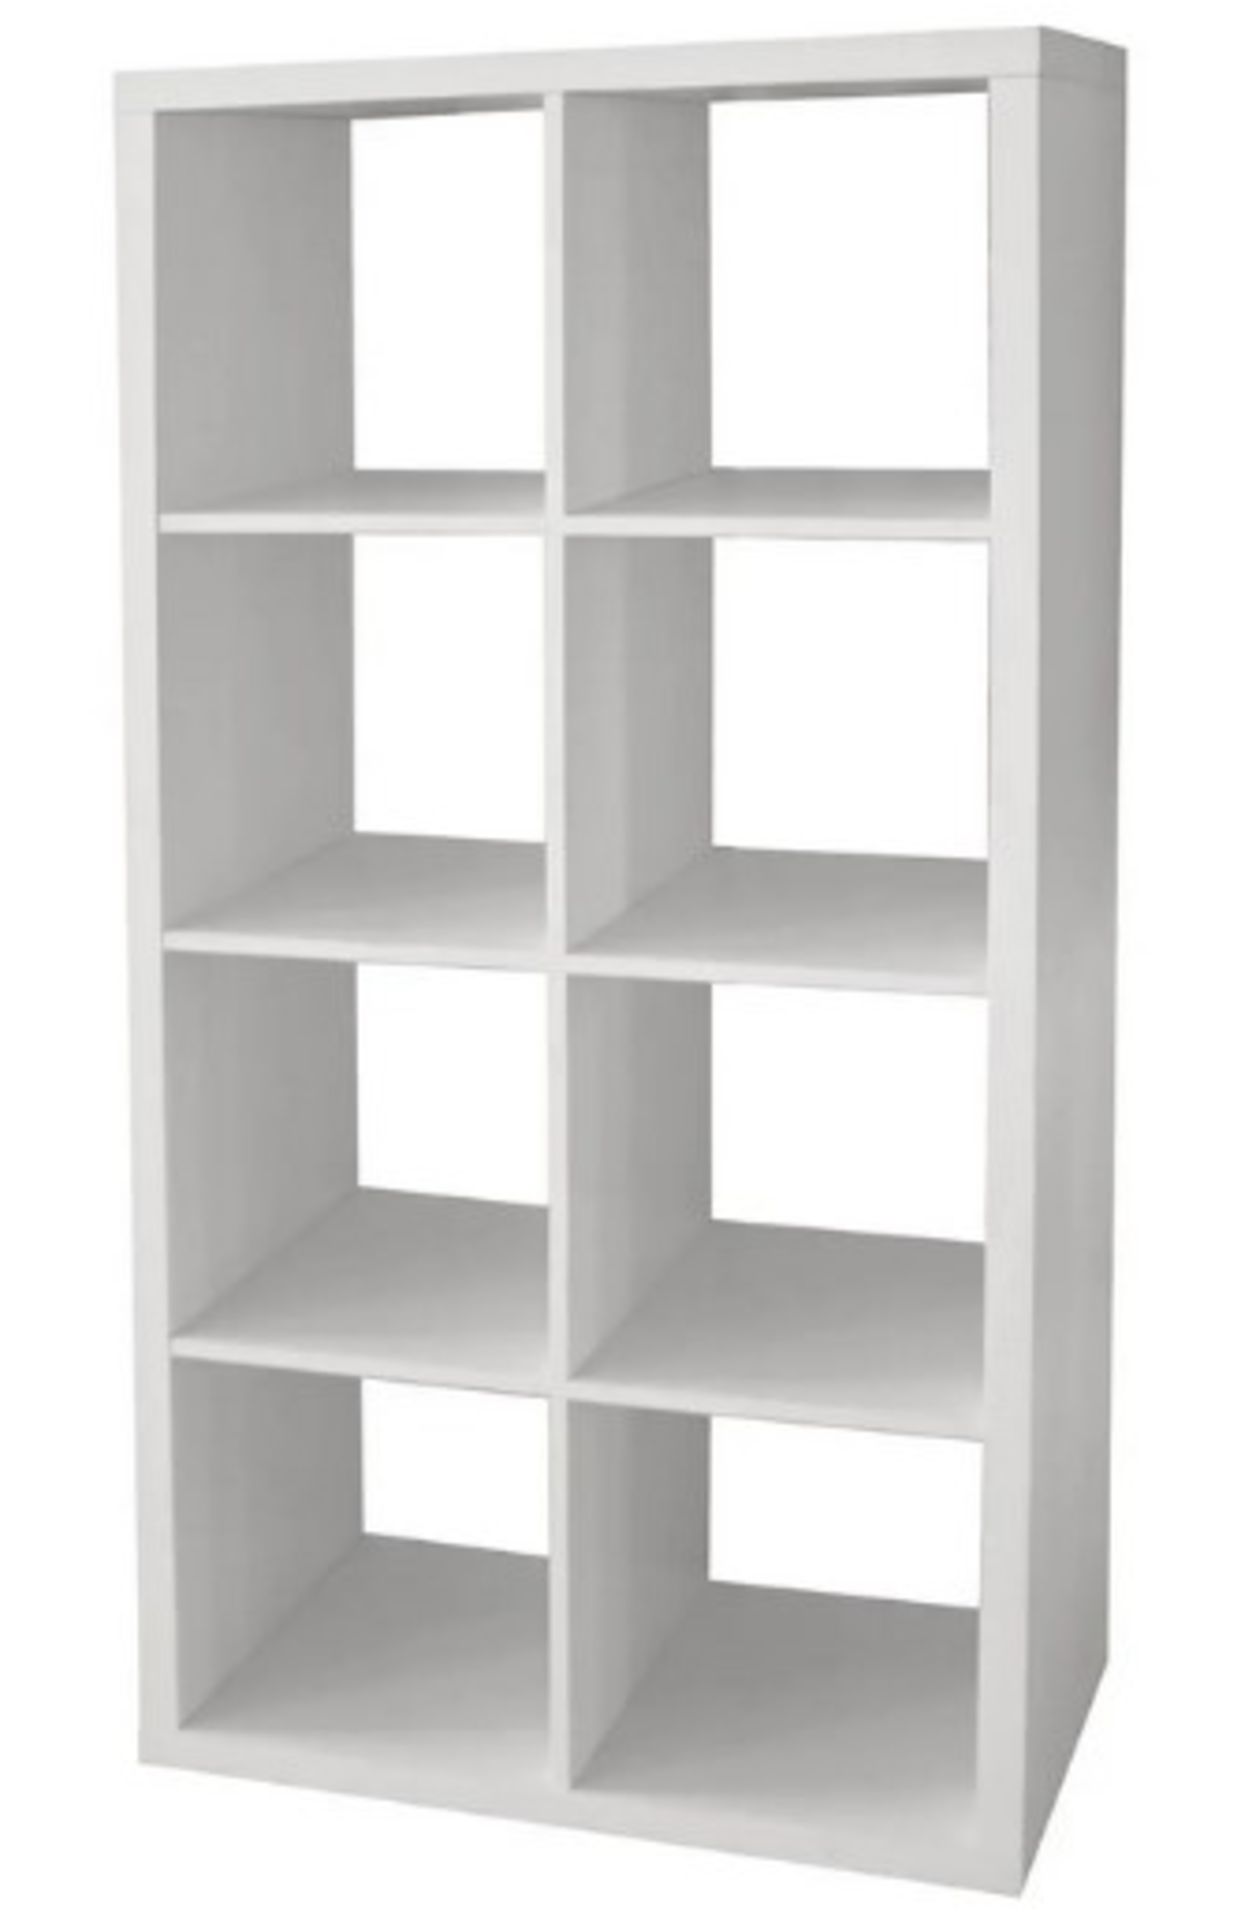 (97/Mez) Living Elements Clever Cube 2x4 Cube Storage Unit White Matt Finish. 8 Separate Compartm...